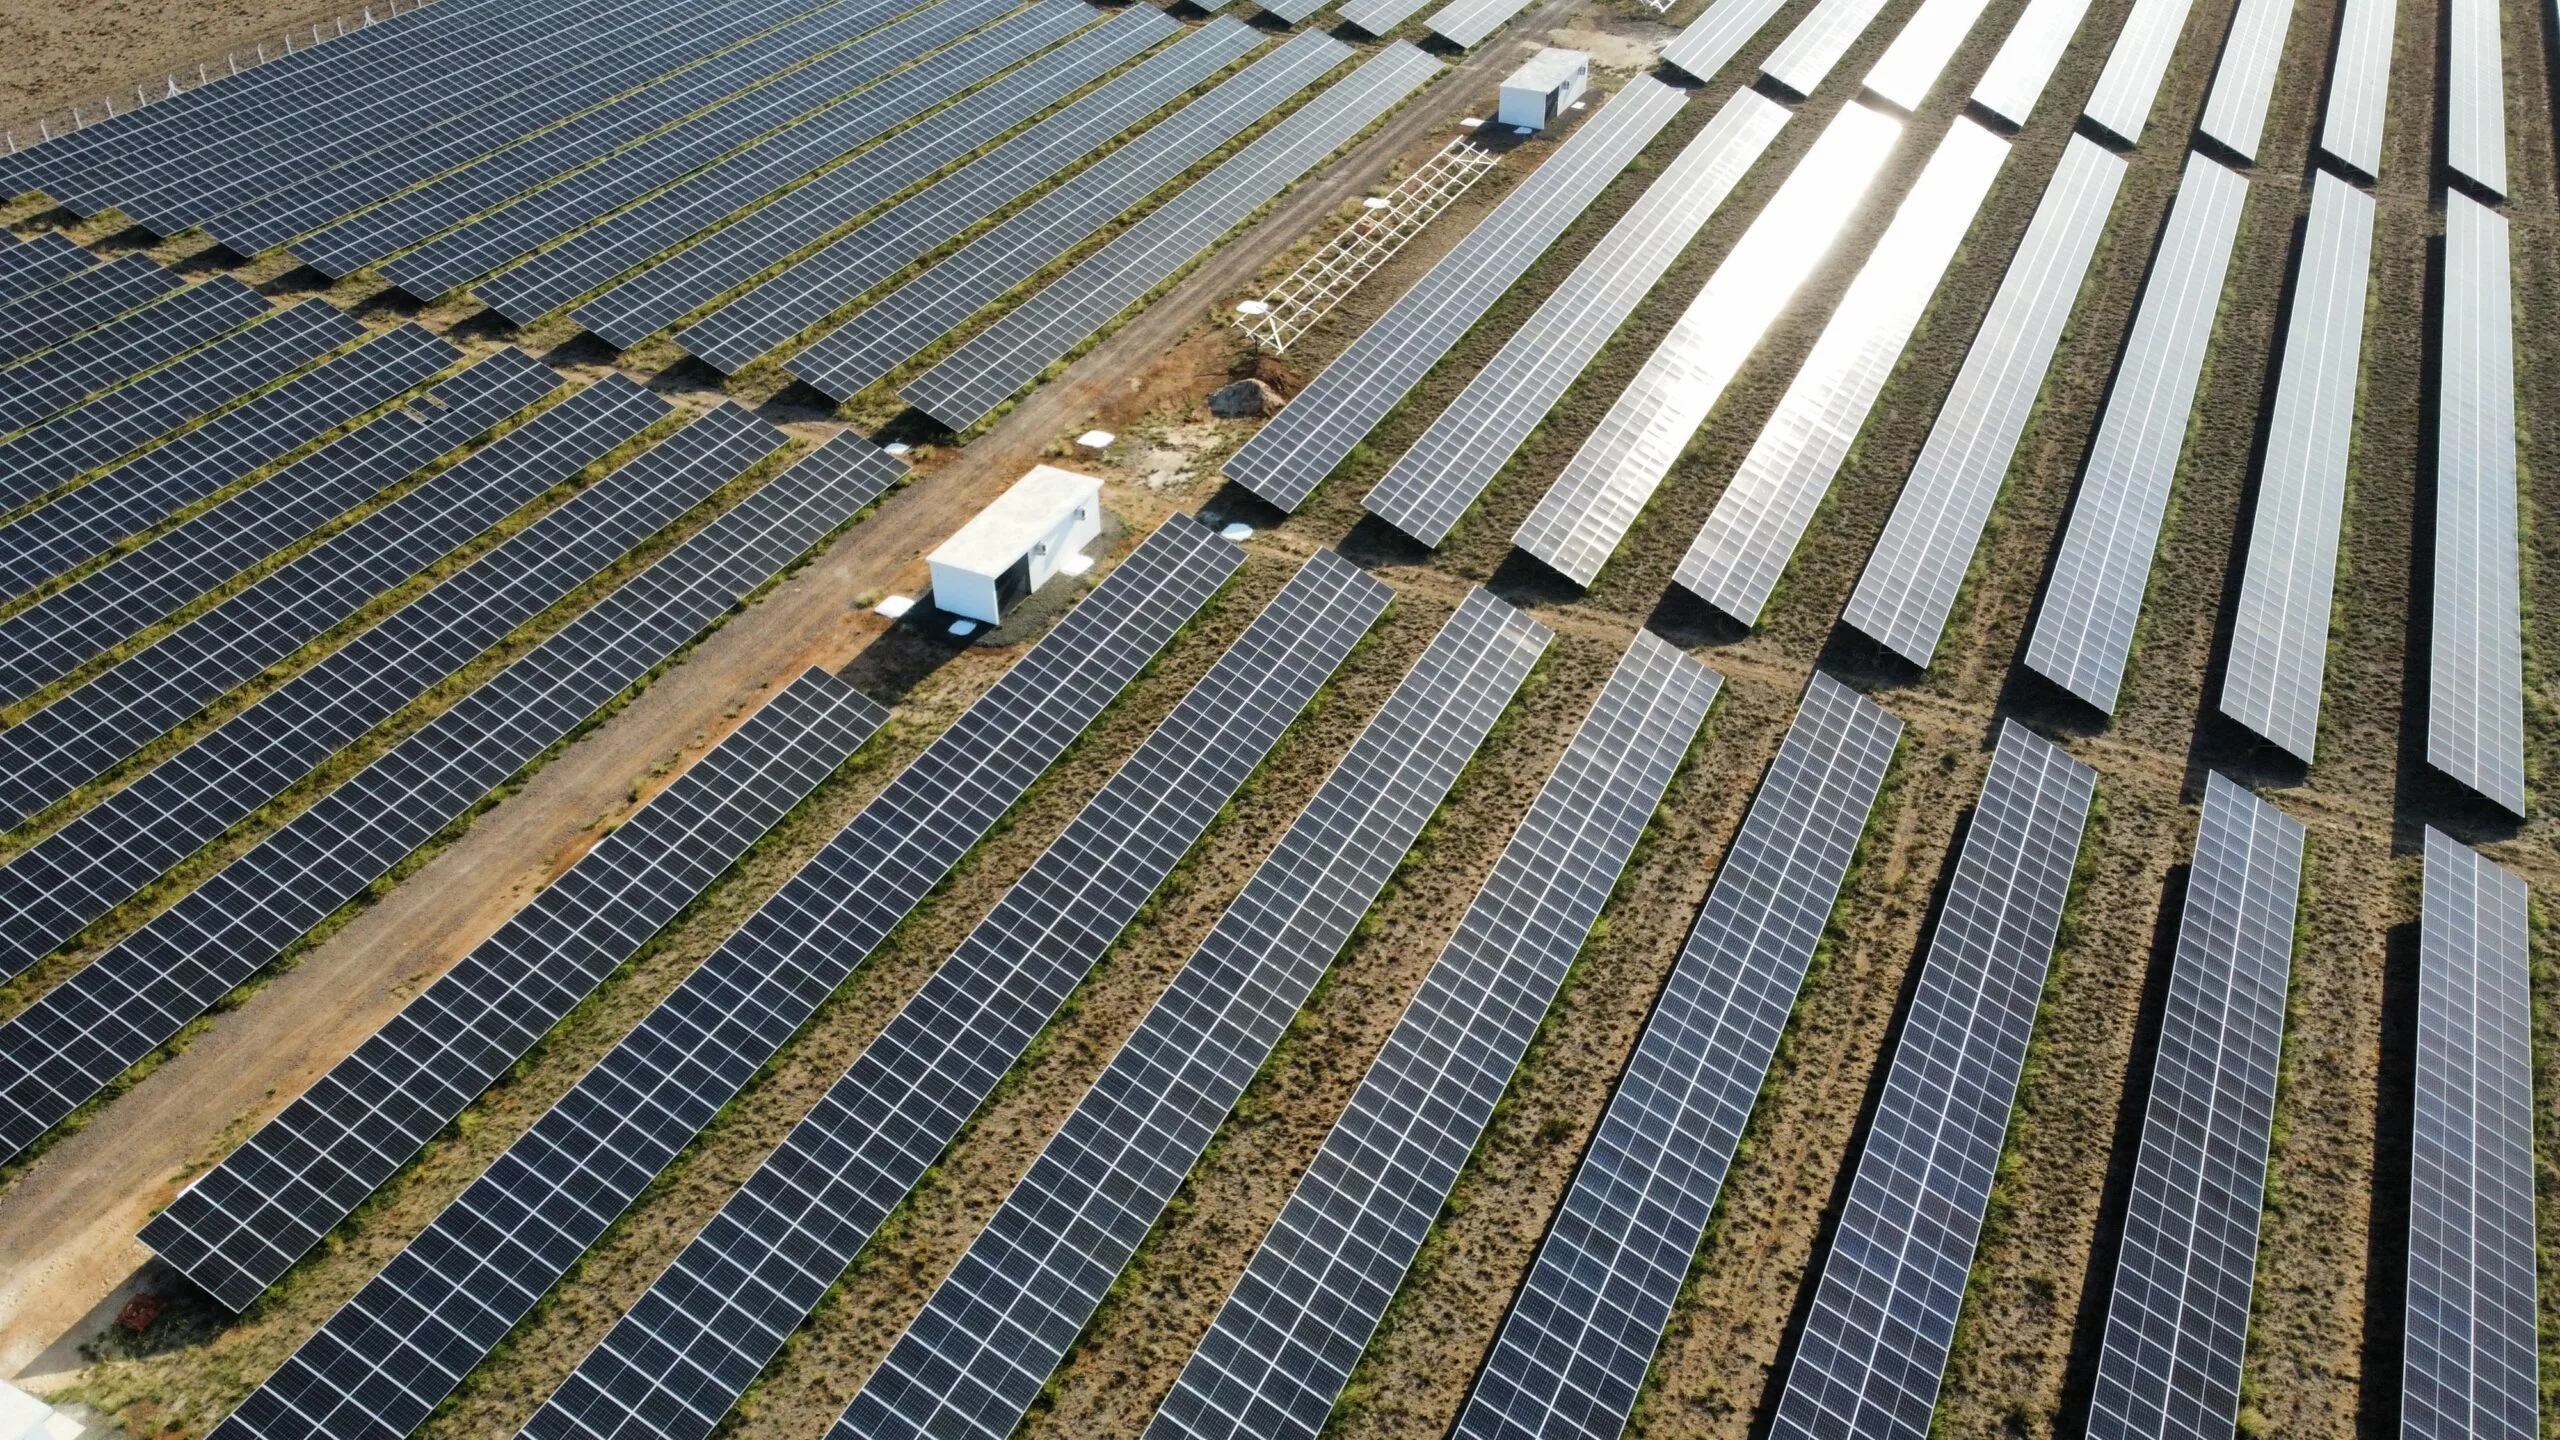 Índia energia solar - Elysia sistema fotovoltaico Brasil